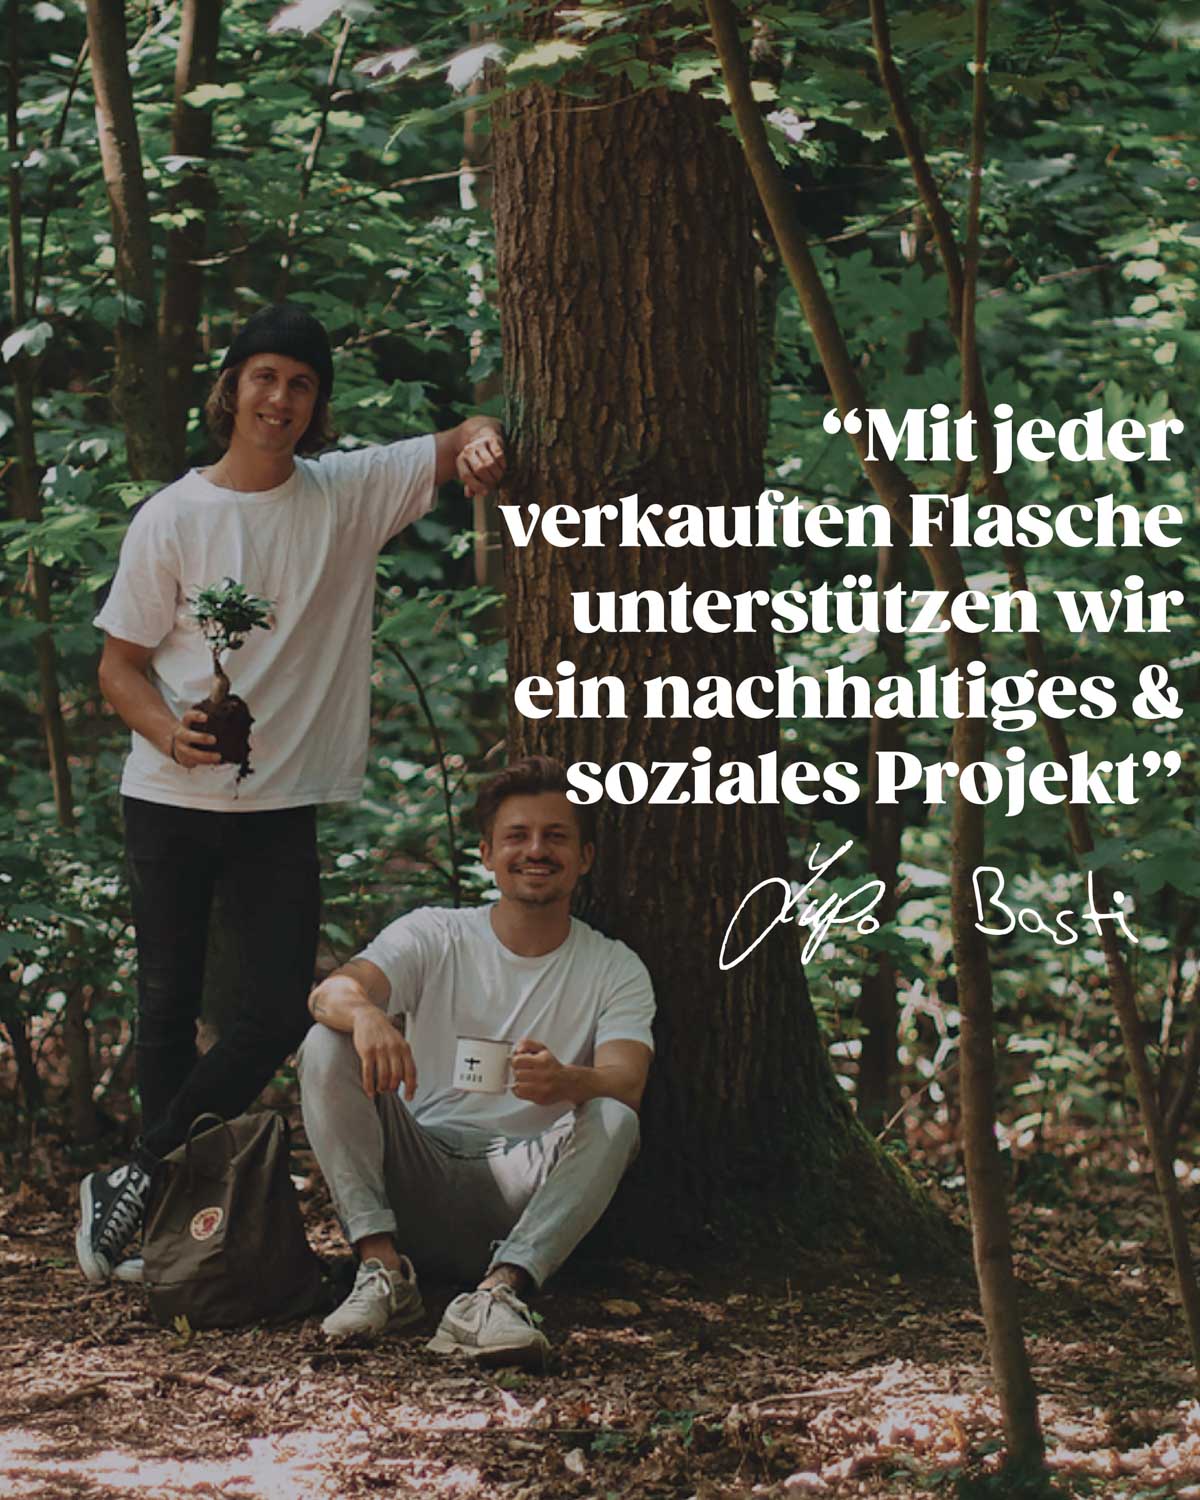 Lupo und Basti im Wald und mit einem kleinen Baum in der Hand, der nun gepflanzt werden kann. Das Bild verdeutlicht ihr Anliegen mit BIRDS nachhaltige und soziale Projekte zu unterstützen pro verkaufter Flasche.